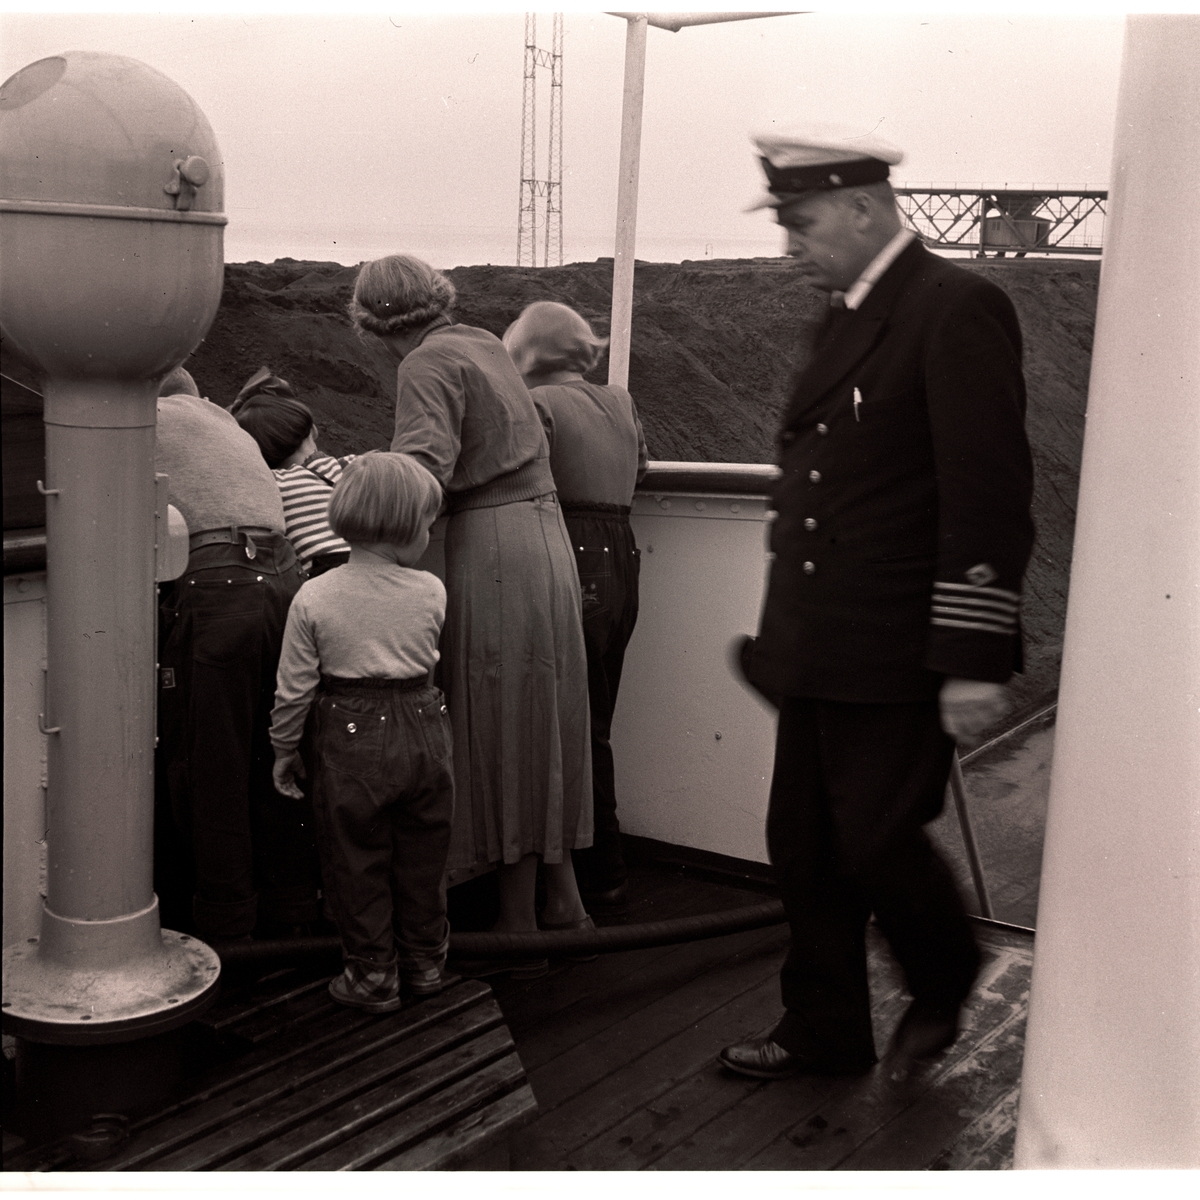 Ombord i Kjødebåten Ingerfire på reise til Svalbard etter sommerferie i Norge i september 1956. Her er de framme ved Hotellneset i Longyearbyen.Solveig, Ranveig, Randi, Tone og Eigil Nødtvedt. Kaptein Sverre W. Dale til høyre.